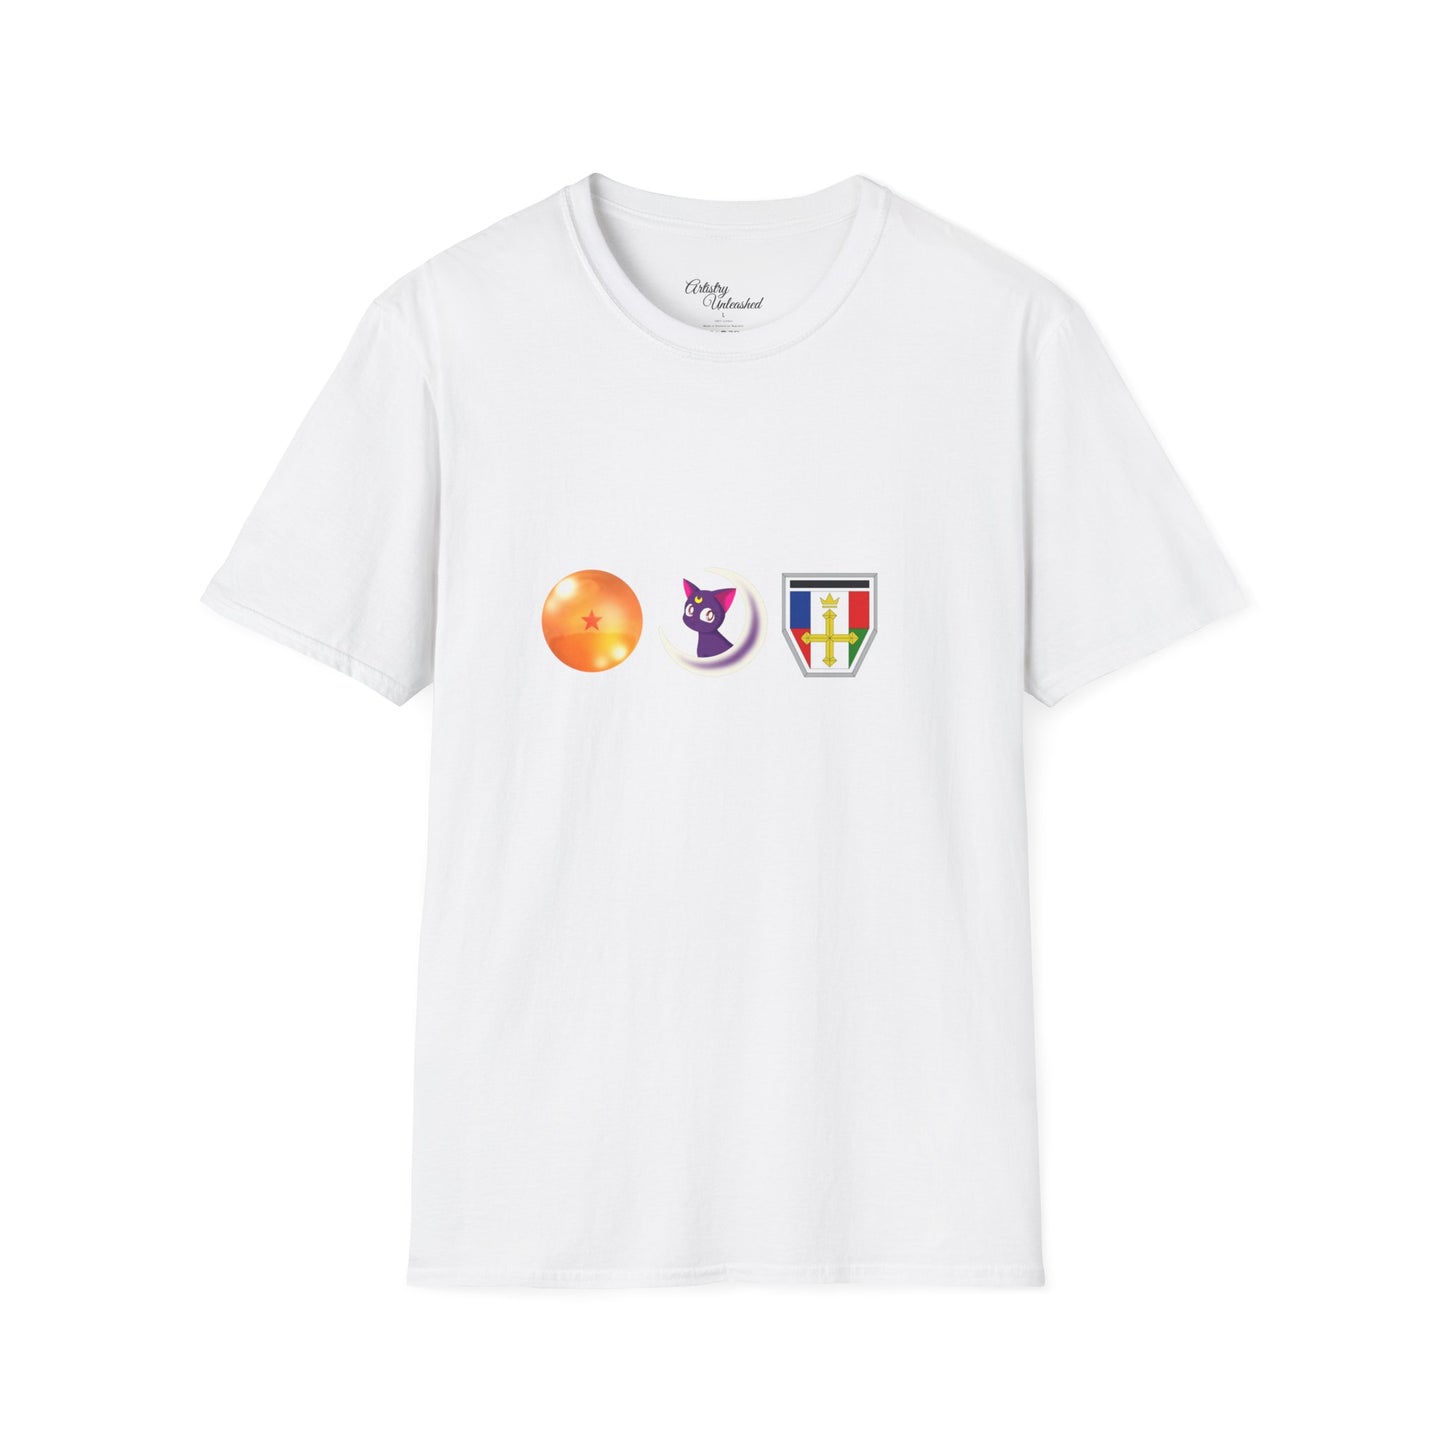 Toonami Raised Me White Unisex Softstyle T-Shirt